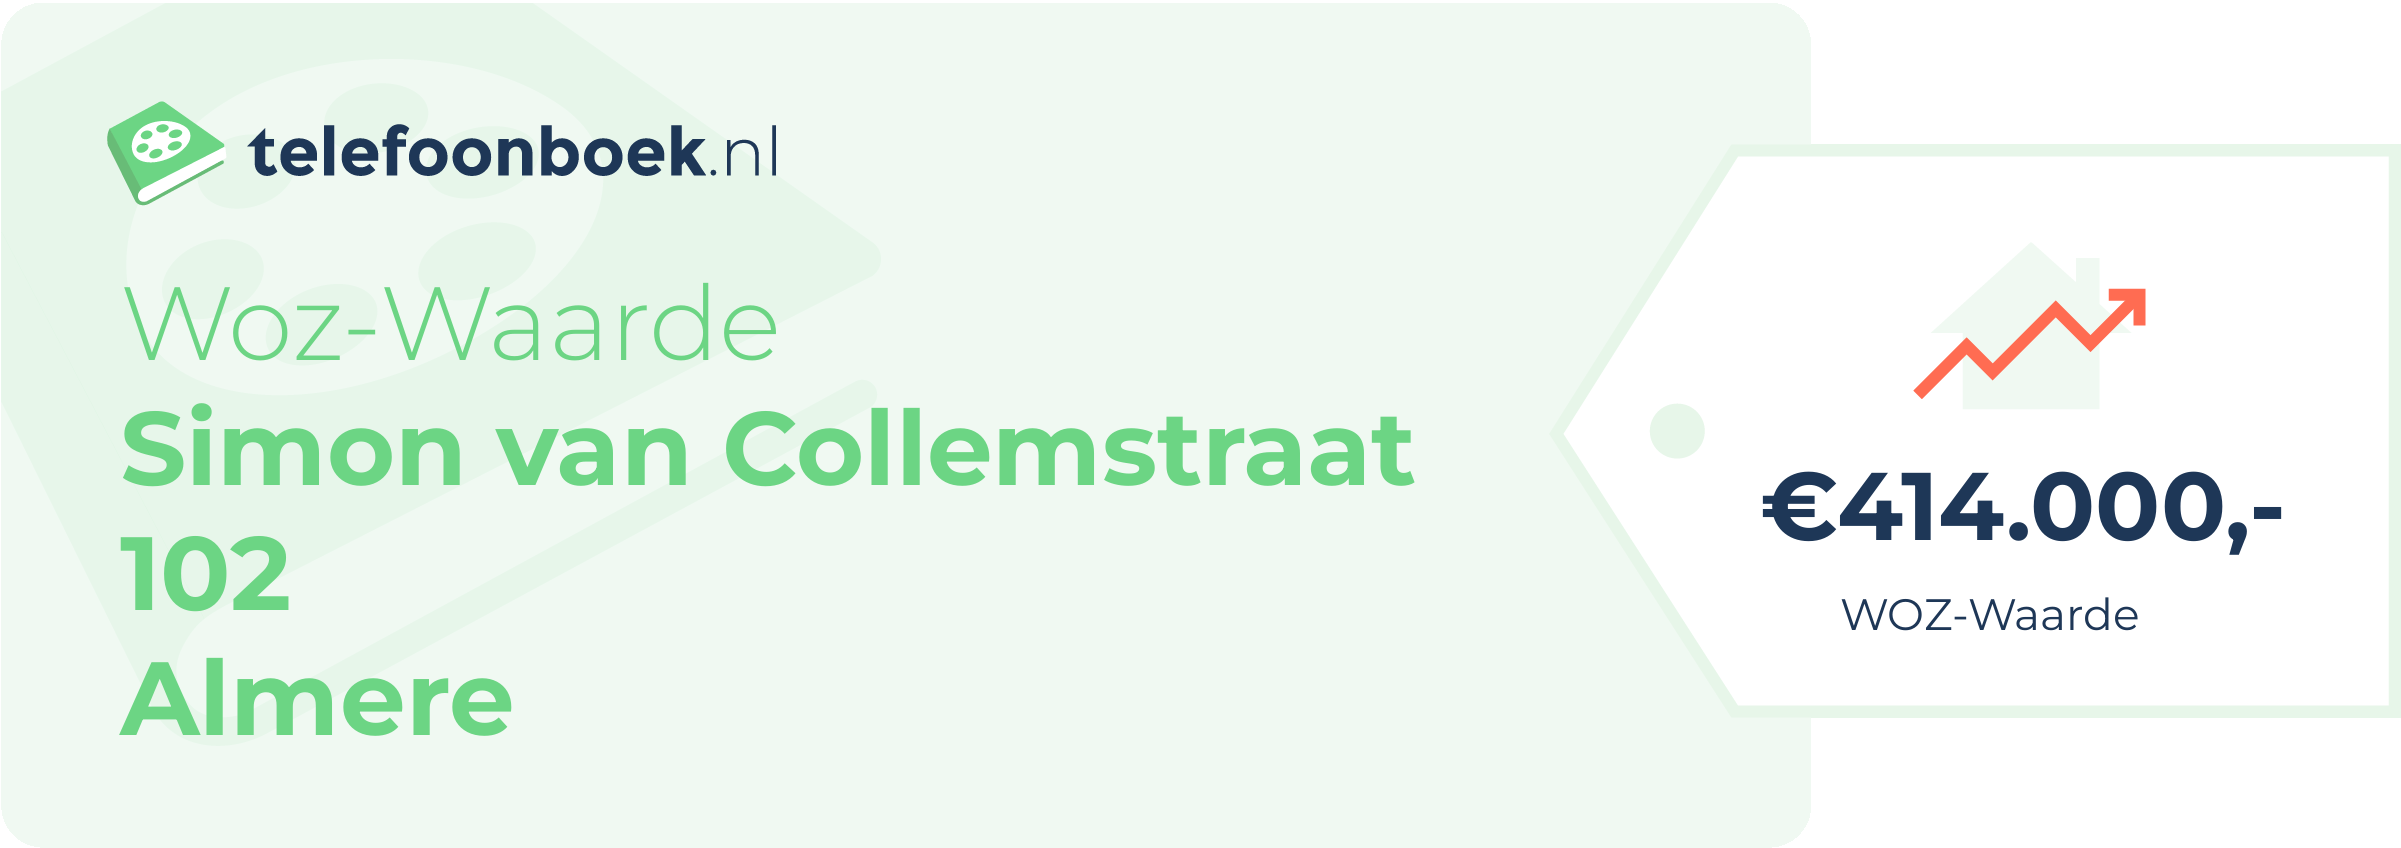 WOZ-waarde Simon Van Collemstraat 102 Almere